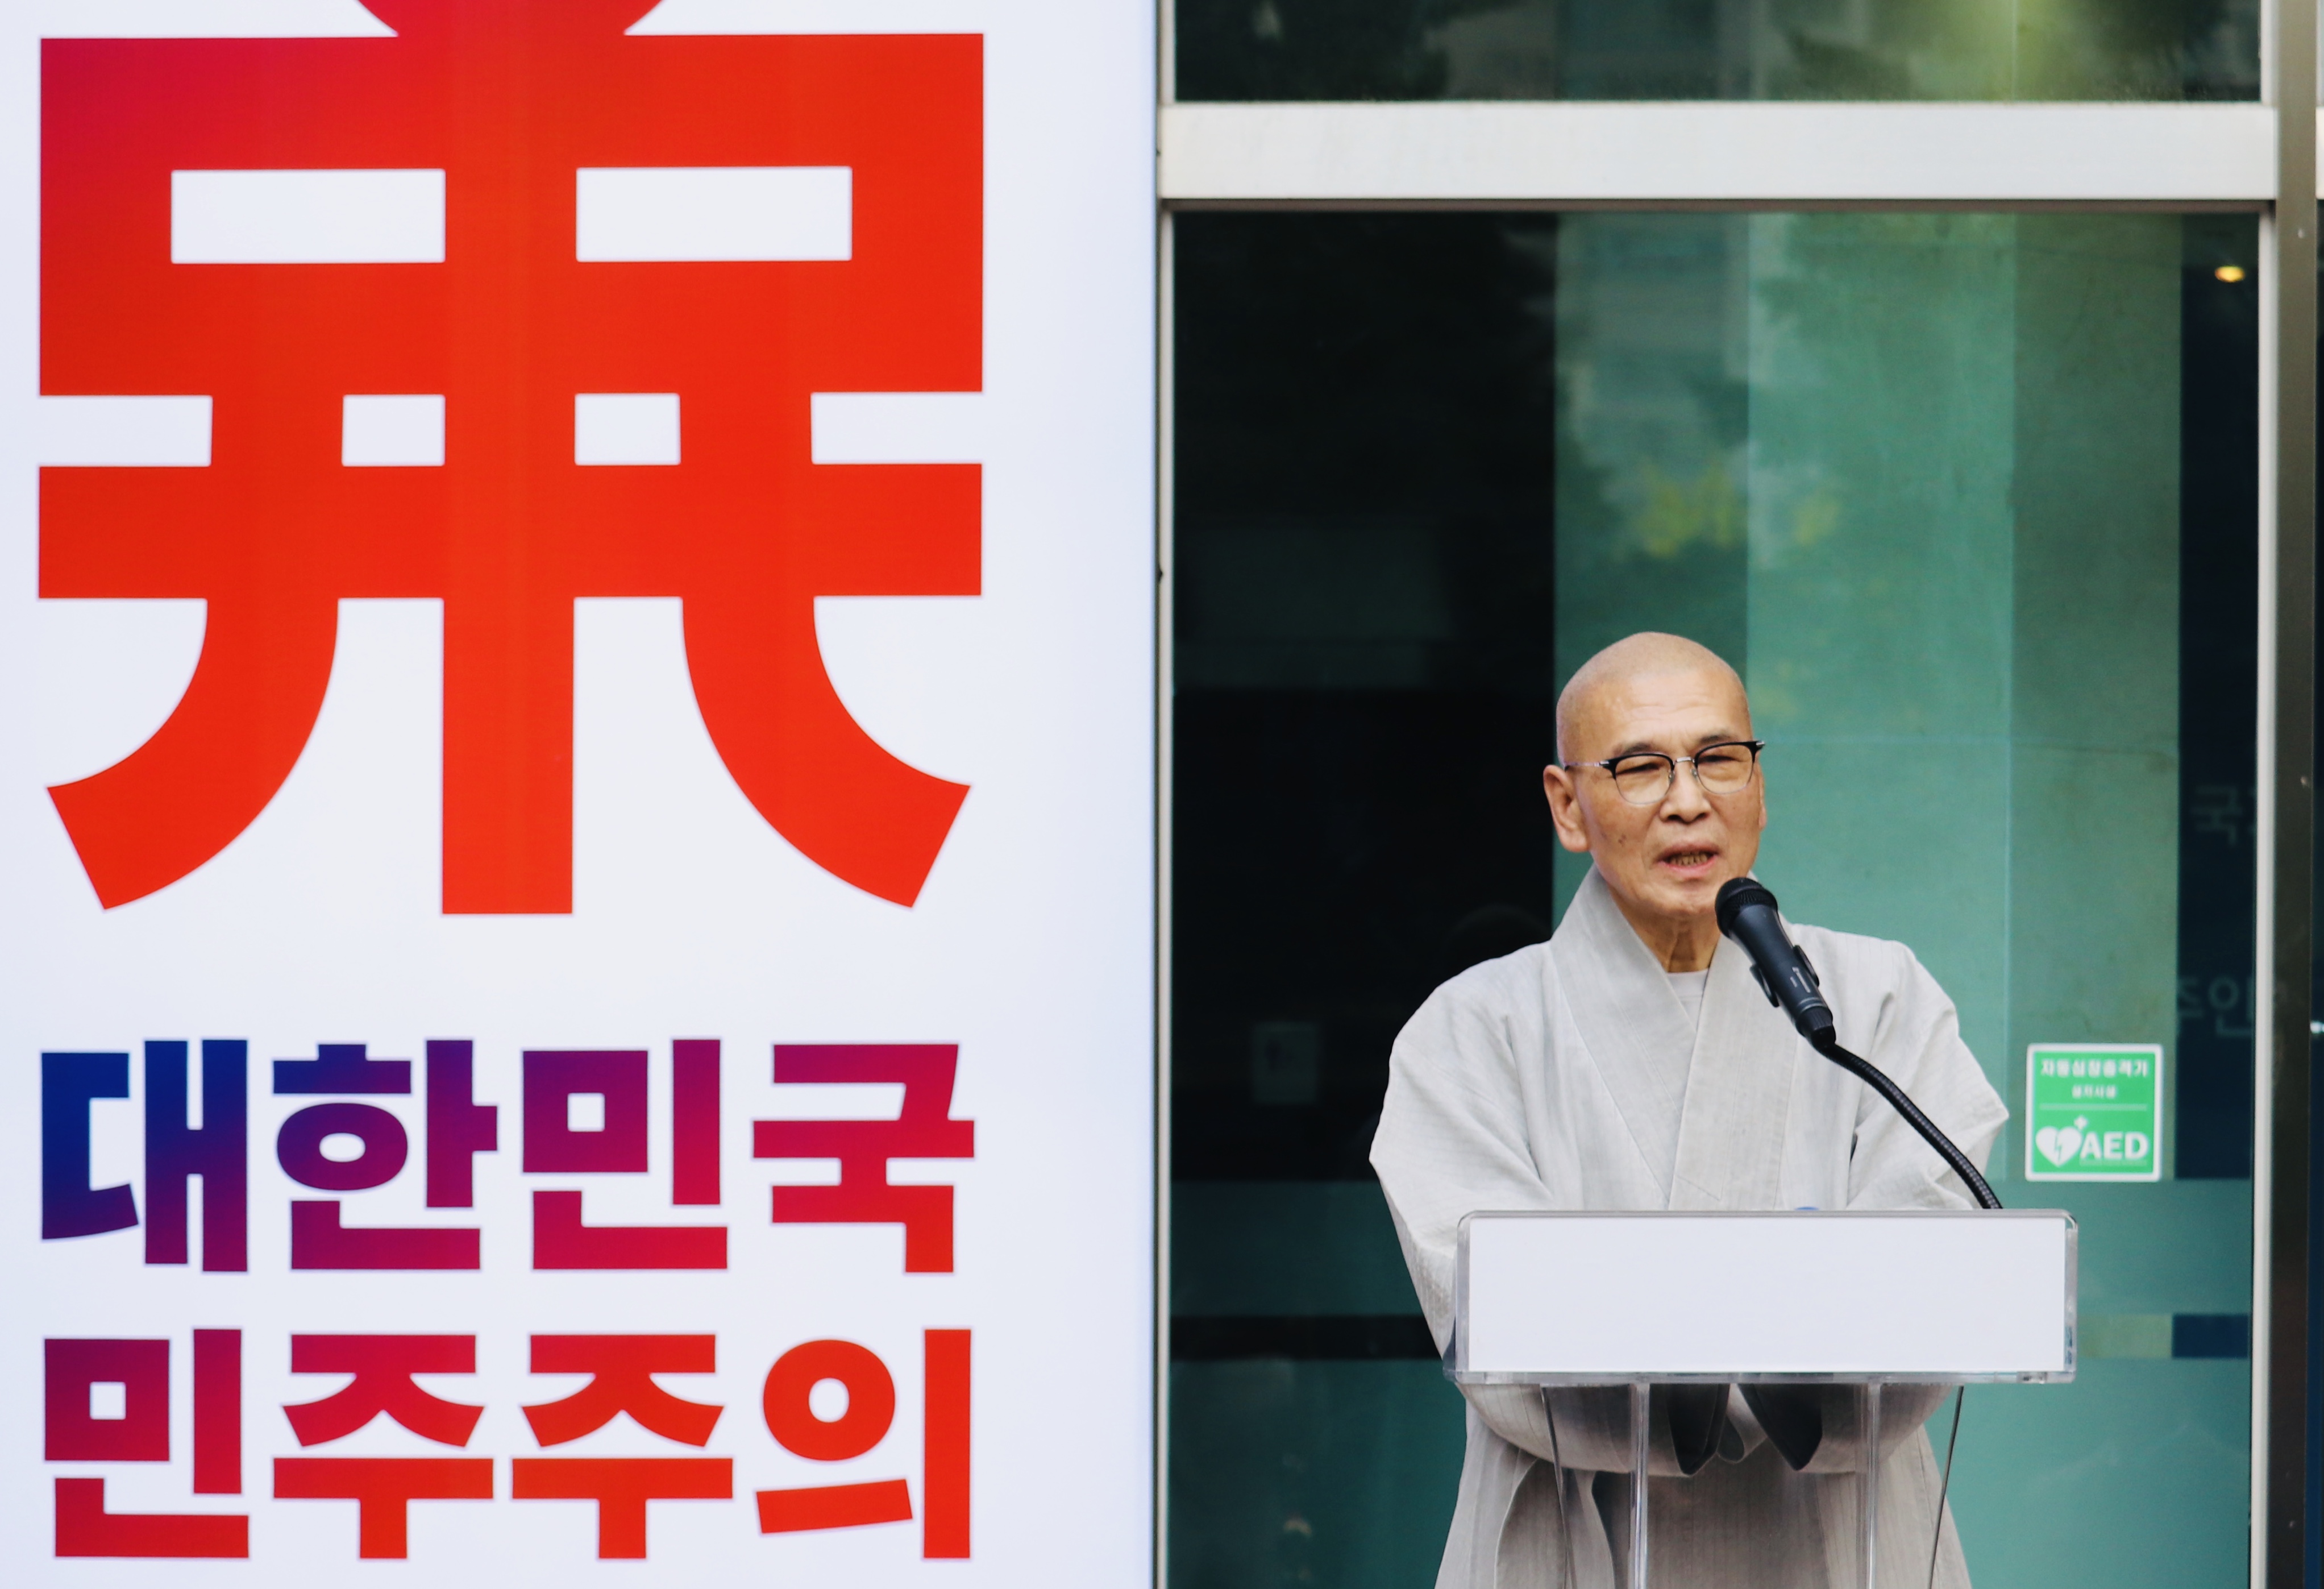 3.1운동 및 임시정부수립 100주년 기념 ‘민주인권평화’ 박람회 개최